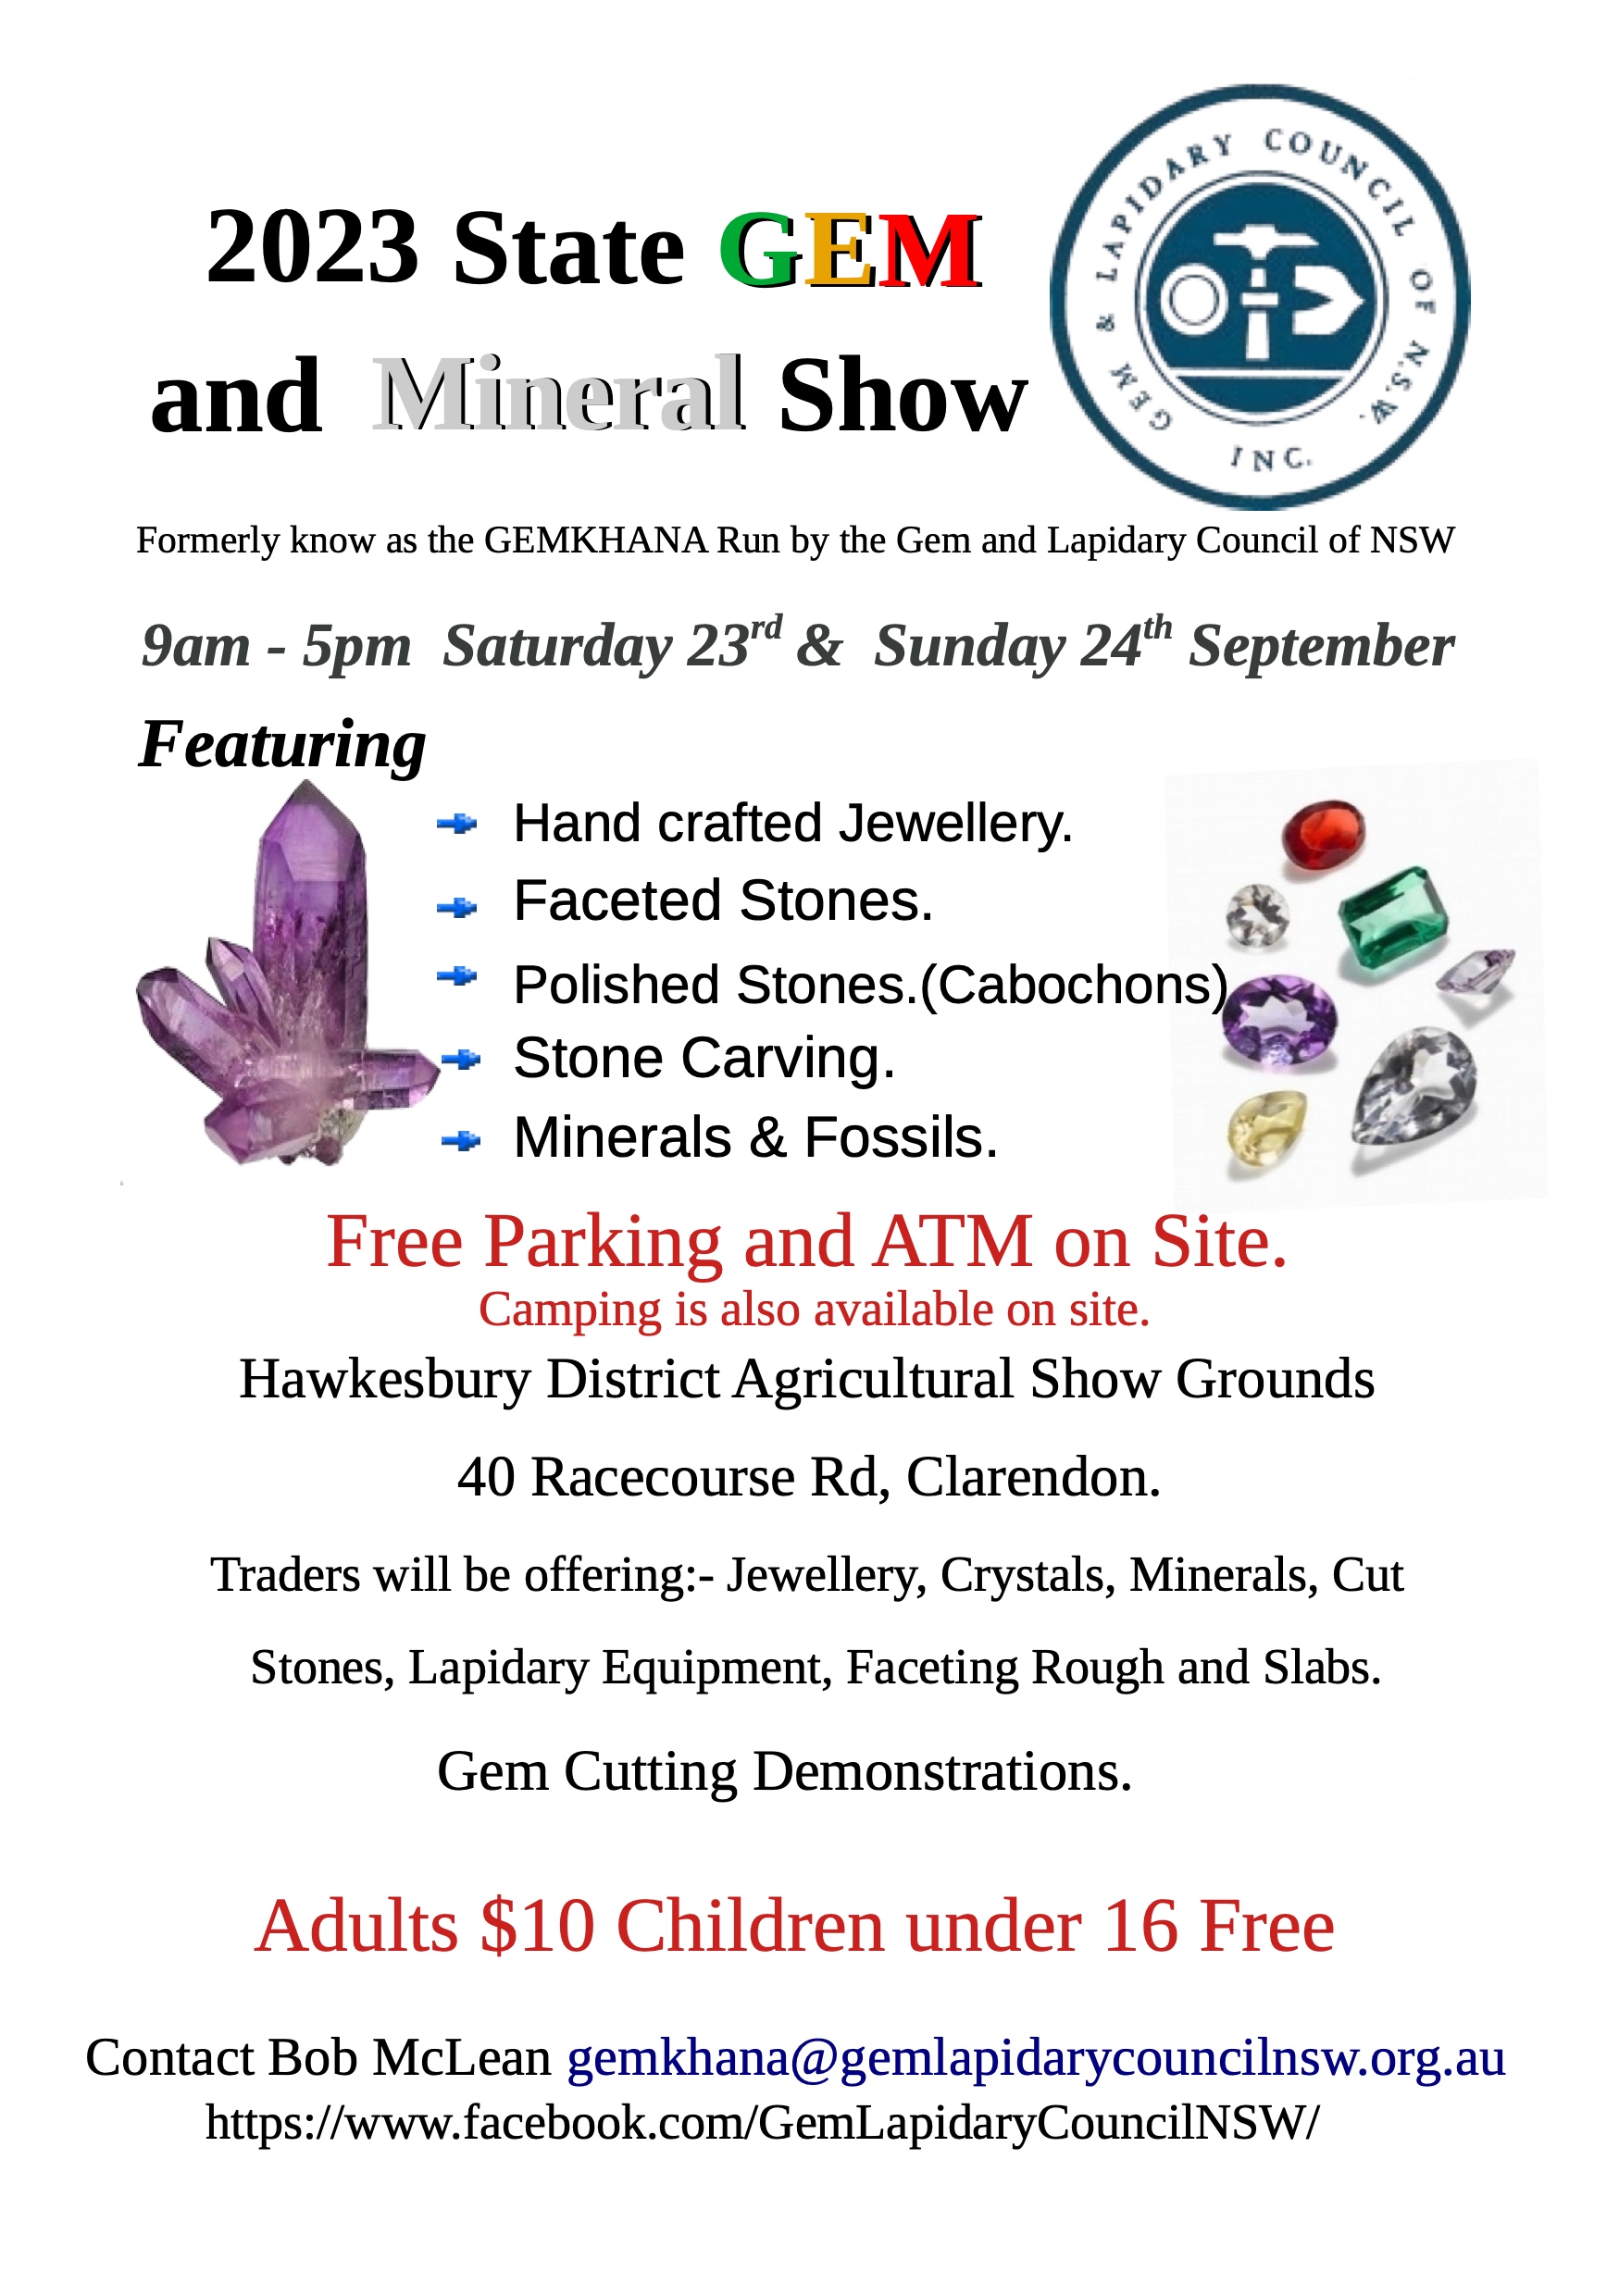 State Gem and Mineral Show, GEMKHANA 2023 Flyer